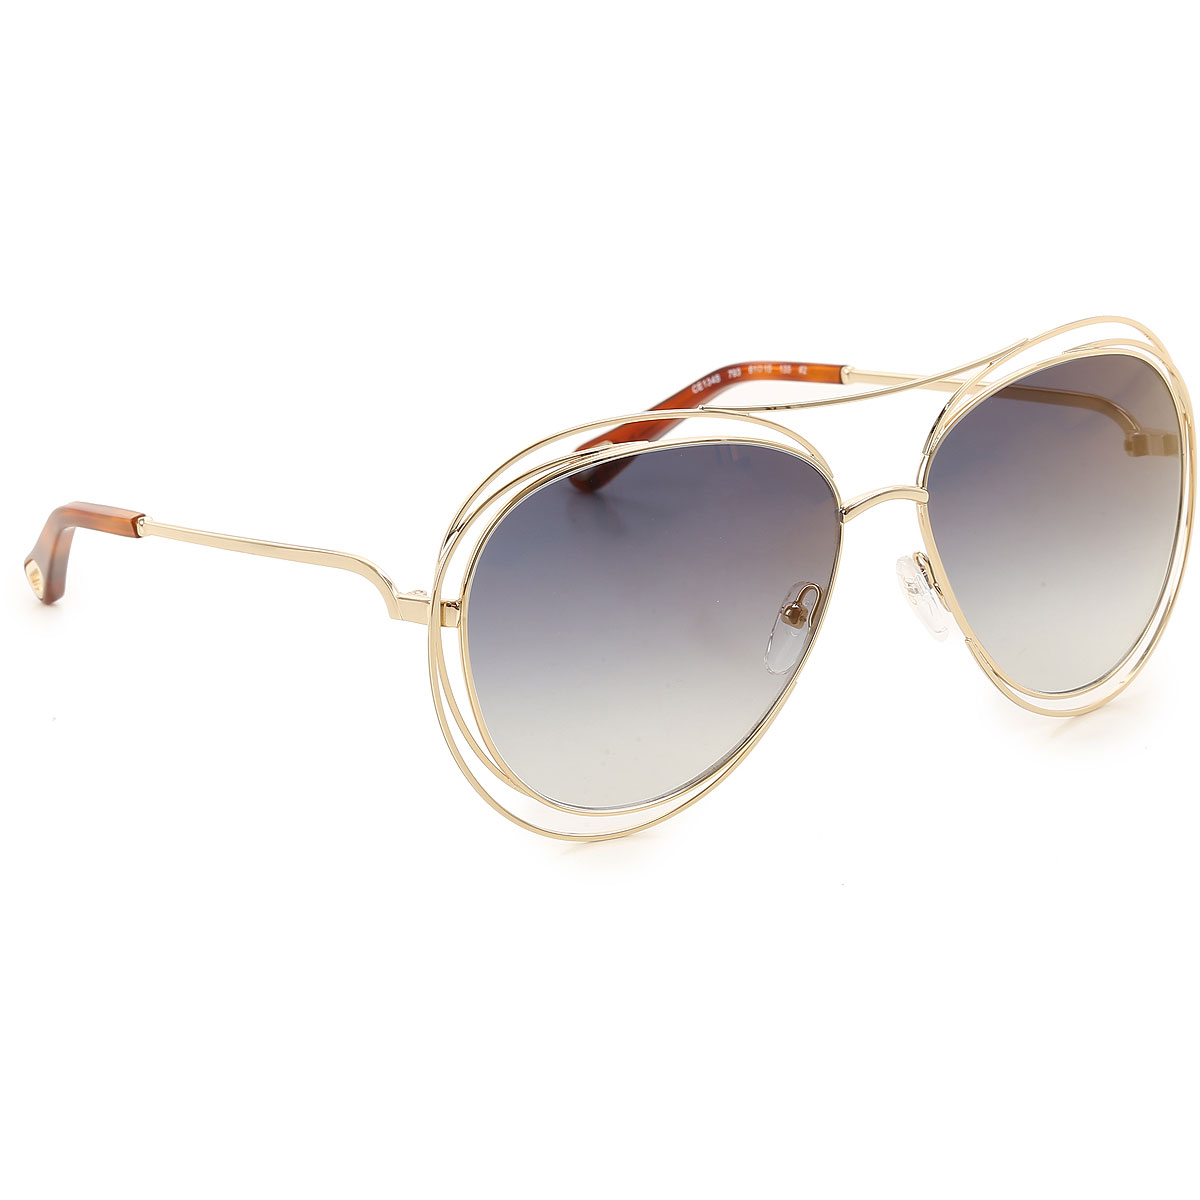 Sunglasses Chloe, Style code: ce134s-793-N59